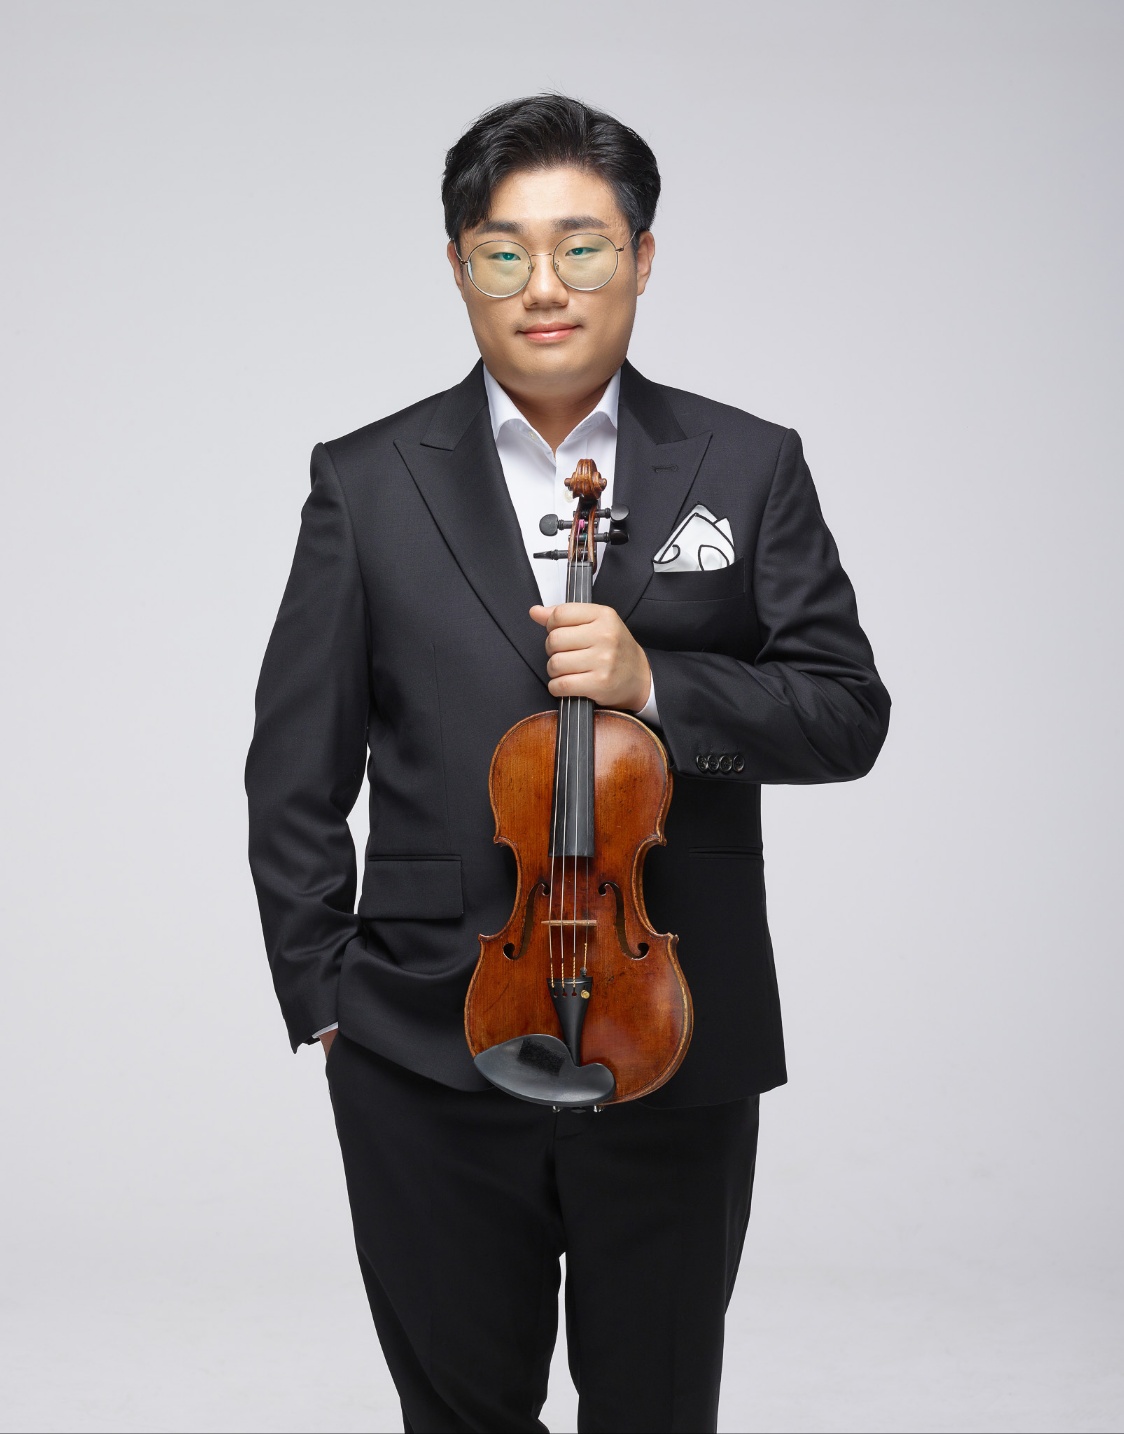 바이올린, 박준형(사진)